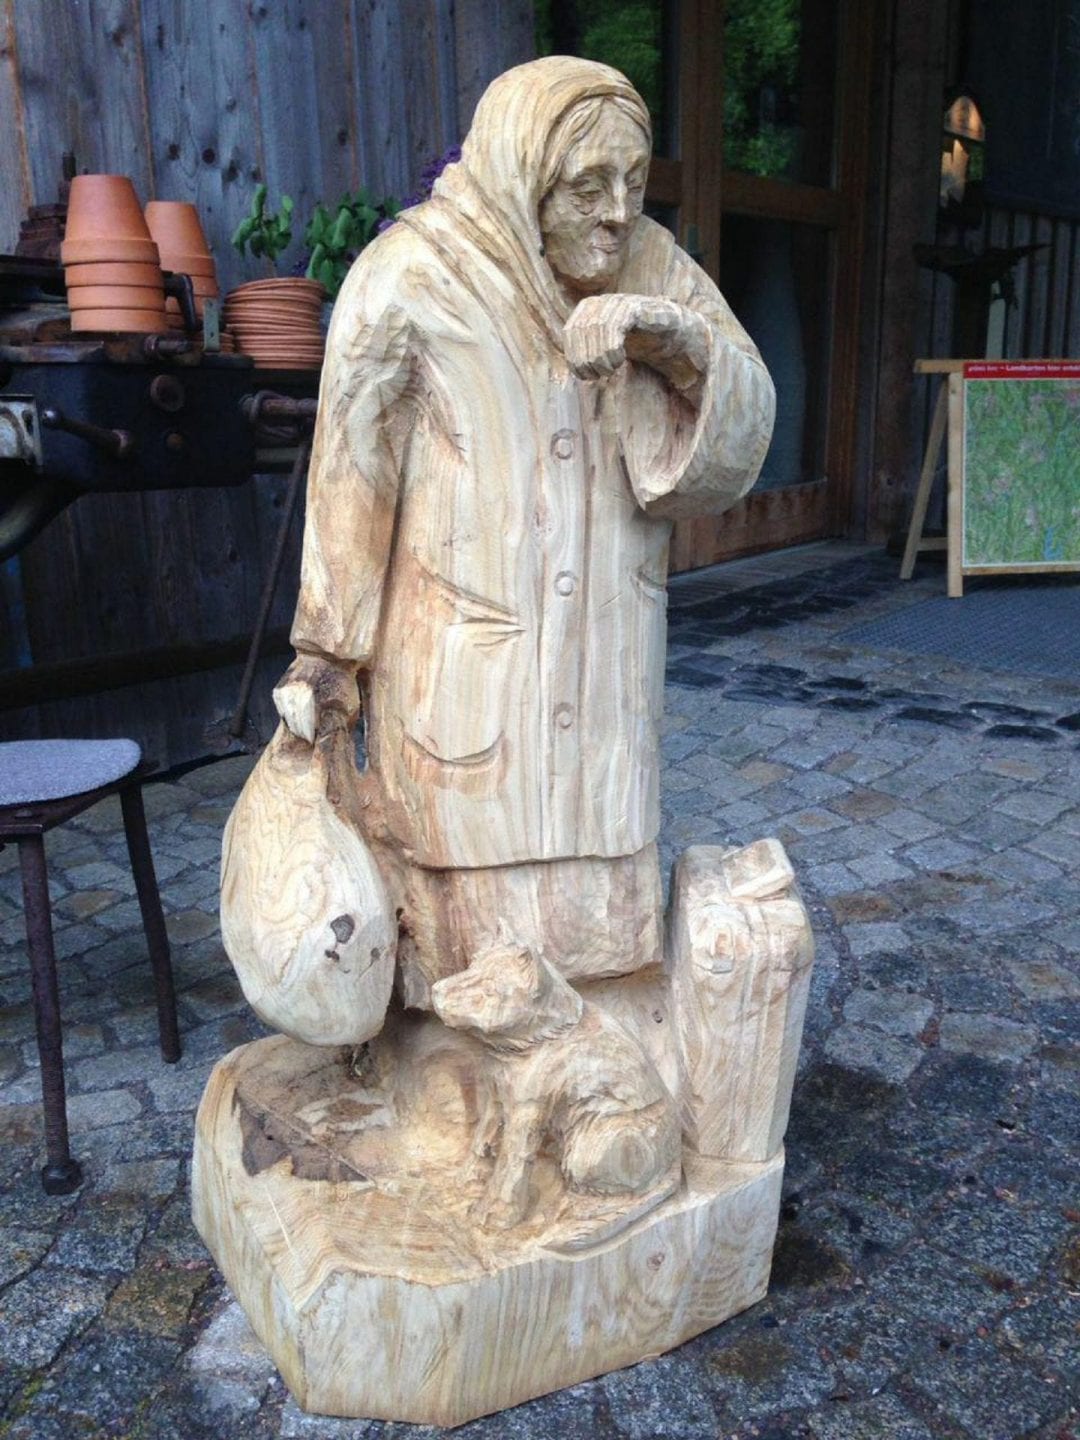 Geschnitzte Figur aus Holz | eine Oma die auf Ihr linkes Handgelenk schaut und im der rechten Hand einen Sack hält. Vor Ihr sitzt ein kleiner Hund.